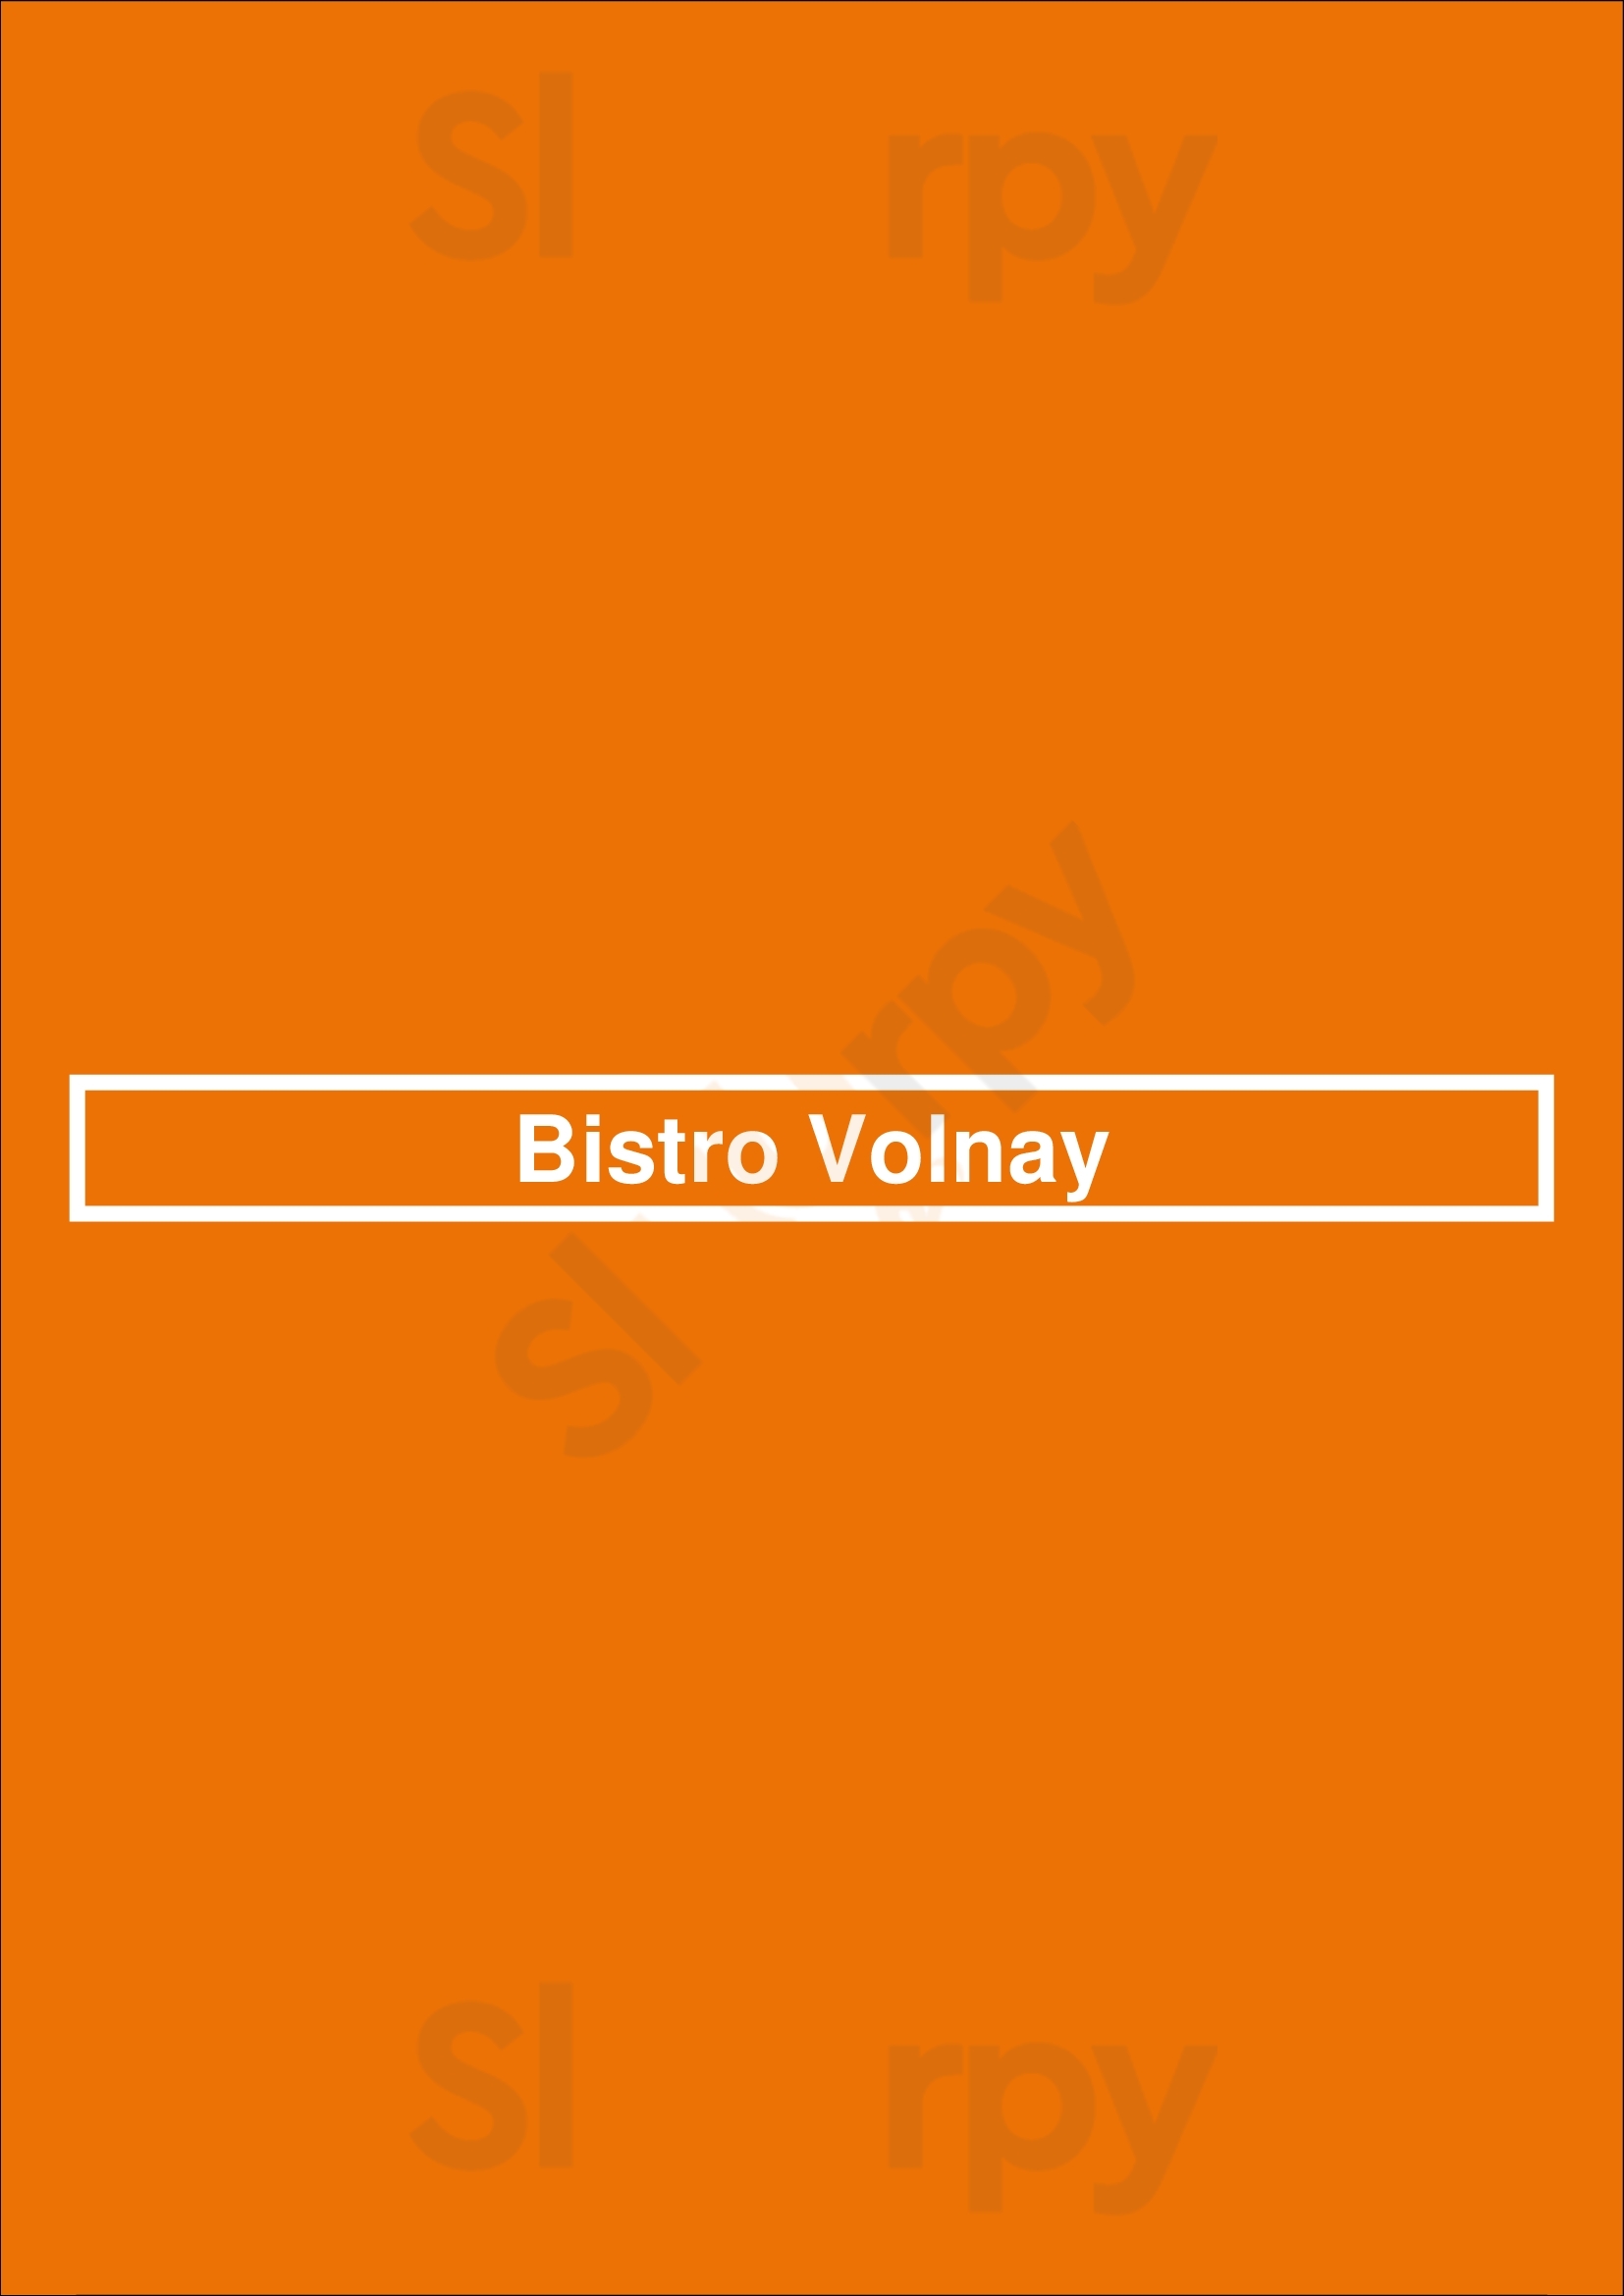 Bistro Volnay Paris Menu - 1